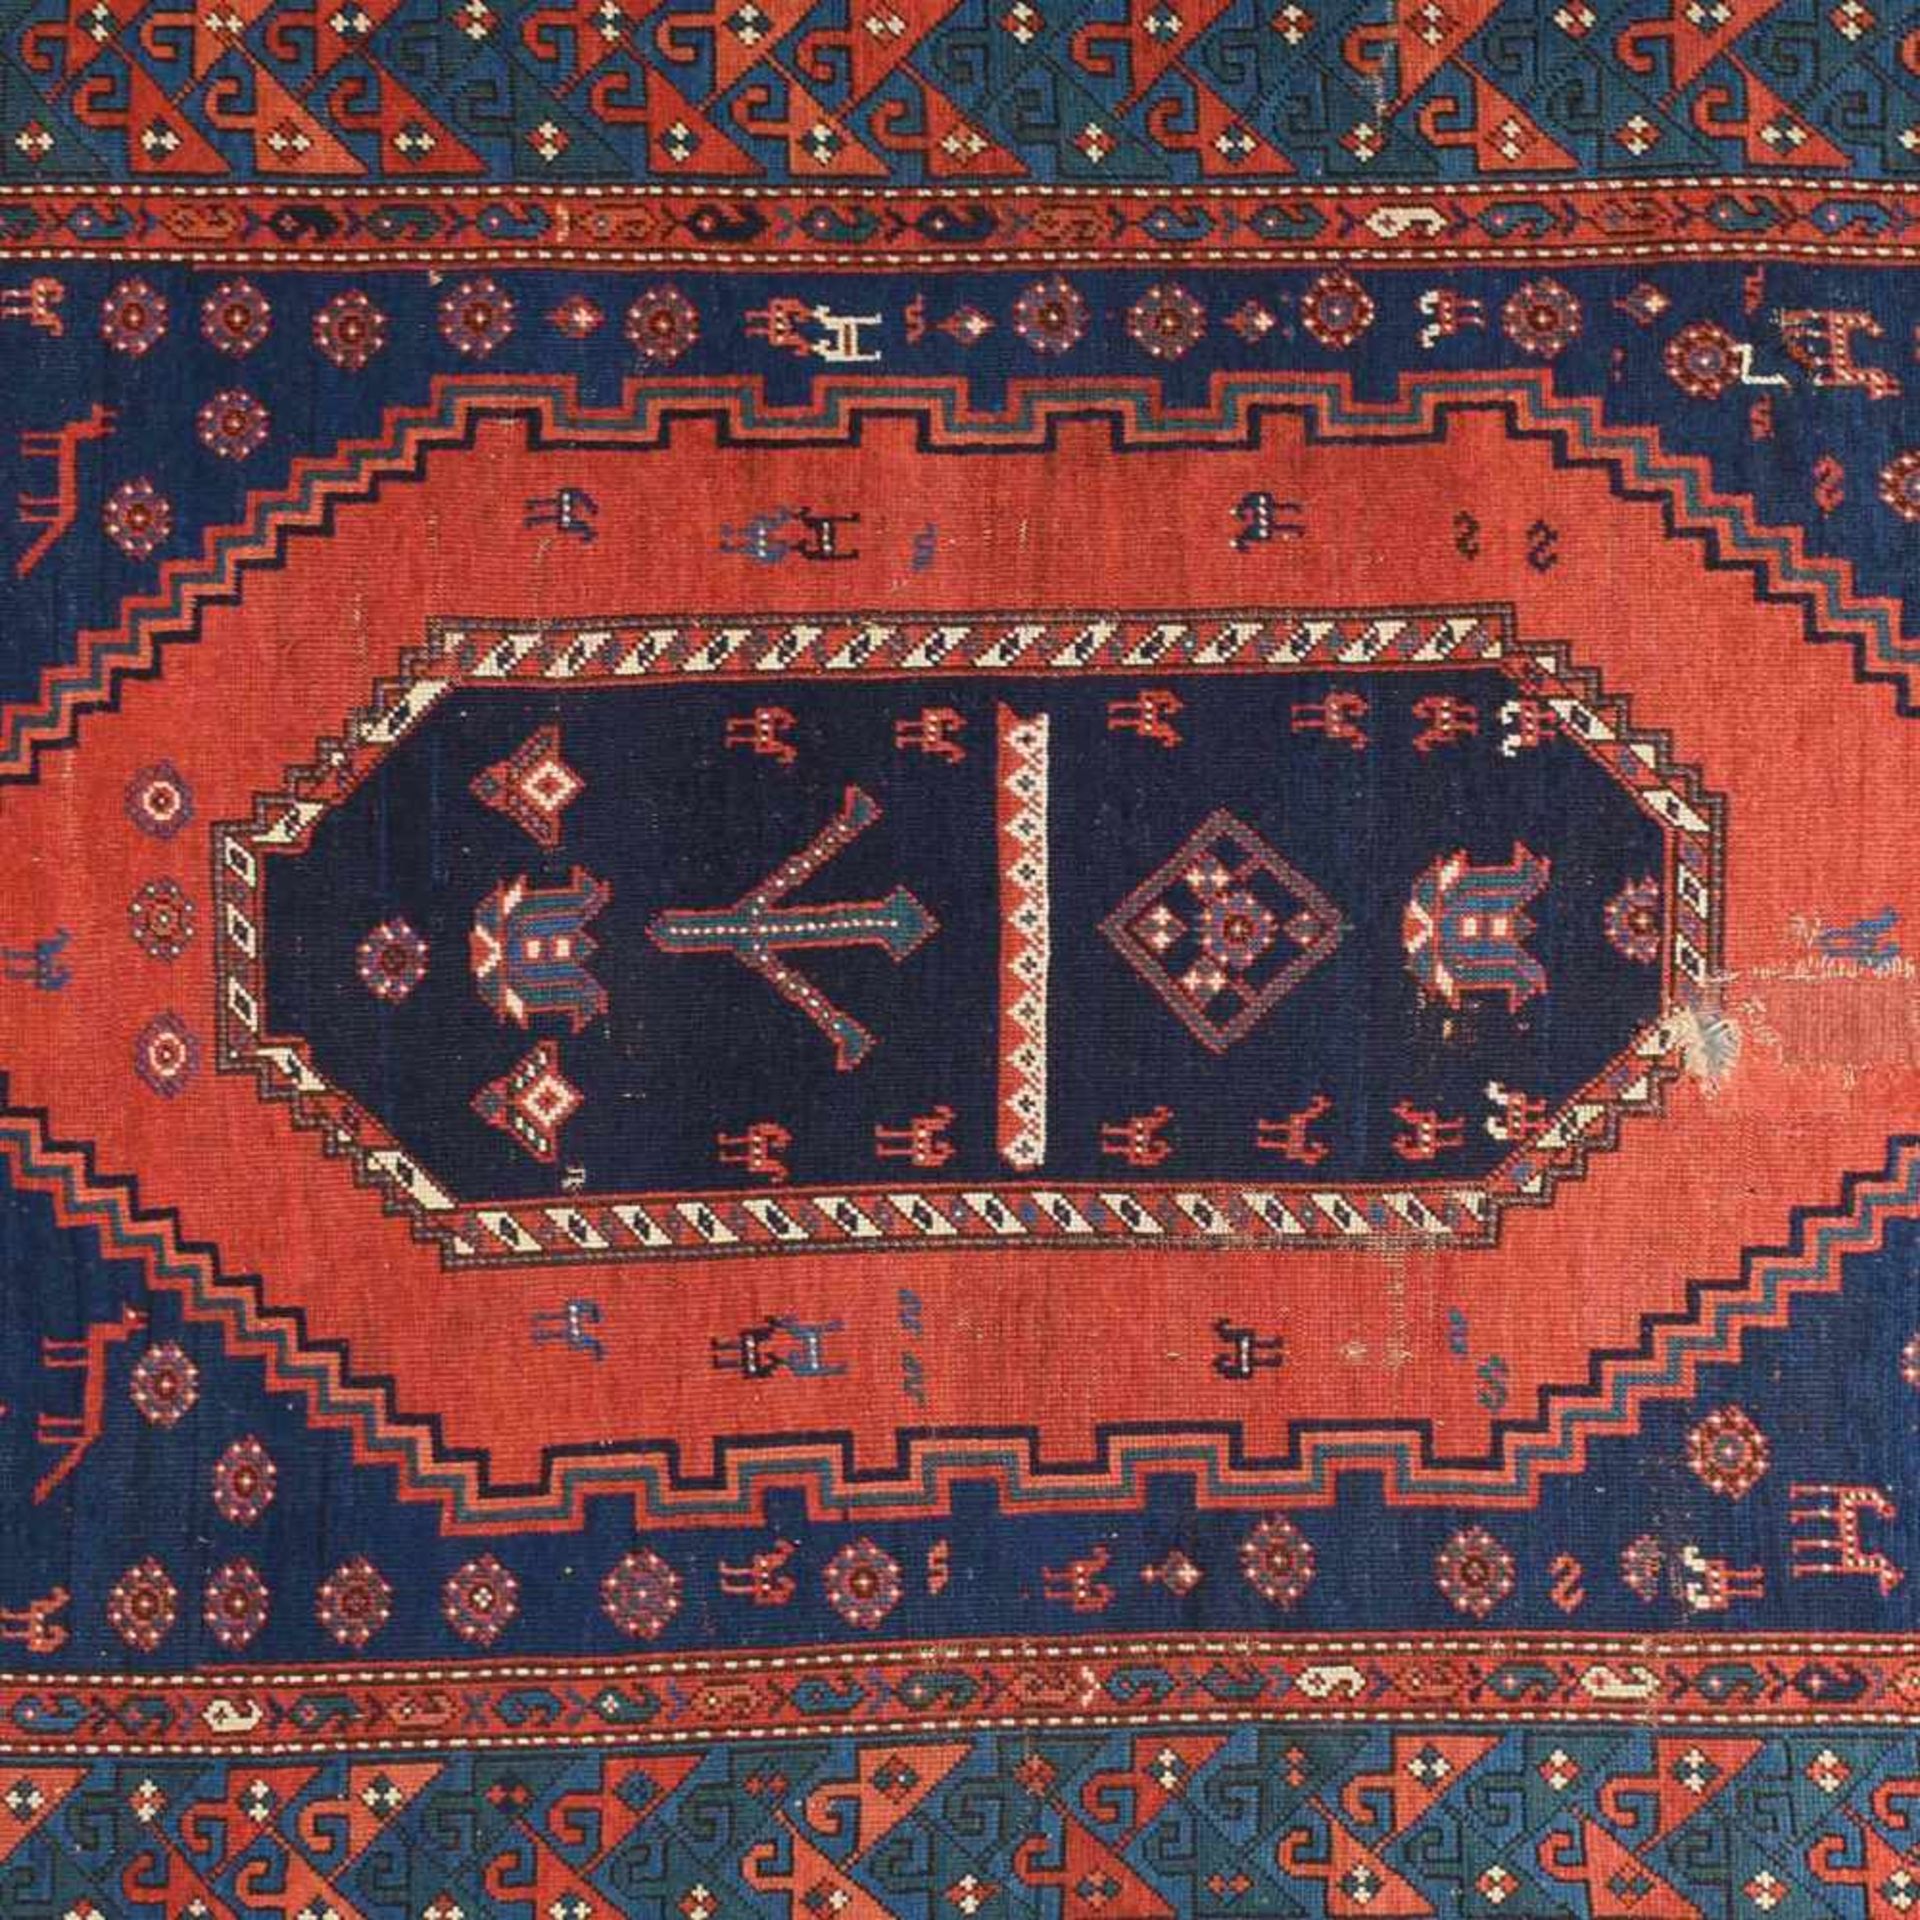 Teppich Wolle, handgeknüpft, in Rot- und Blautönen sowie Cremefarben, Innenfeld mit Zentralmedaillon